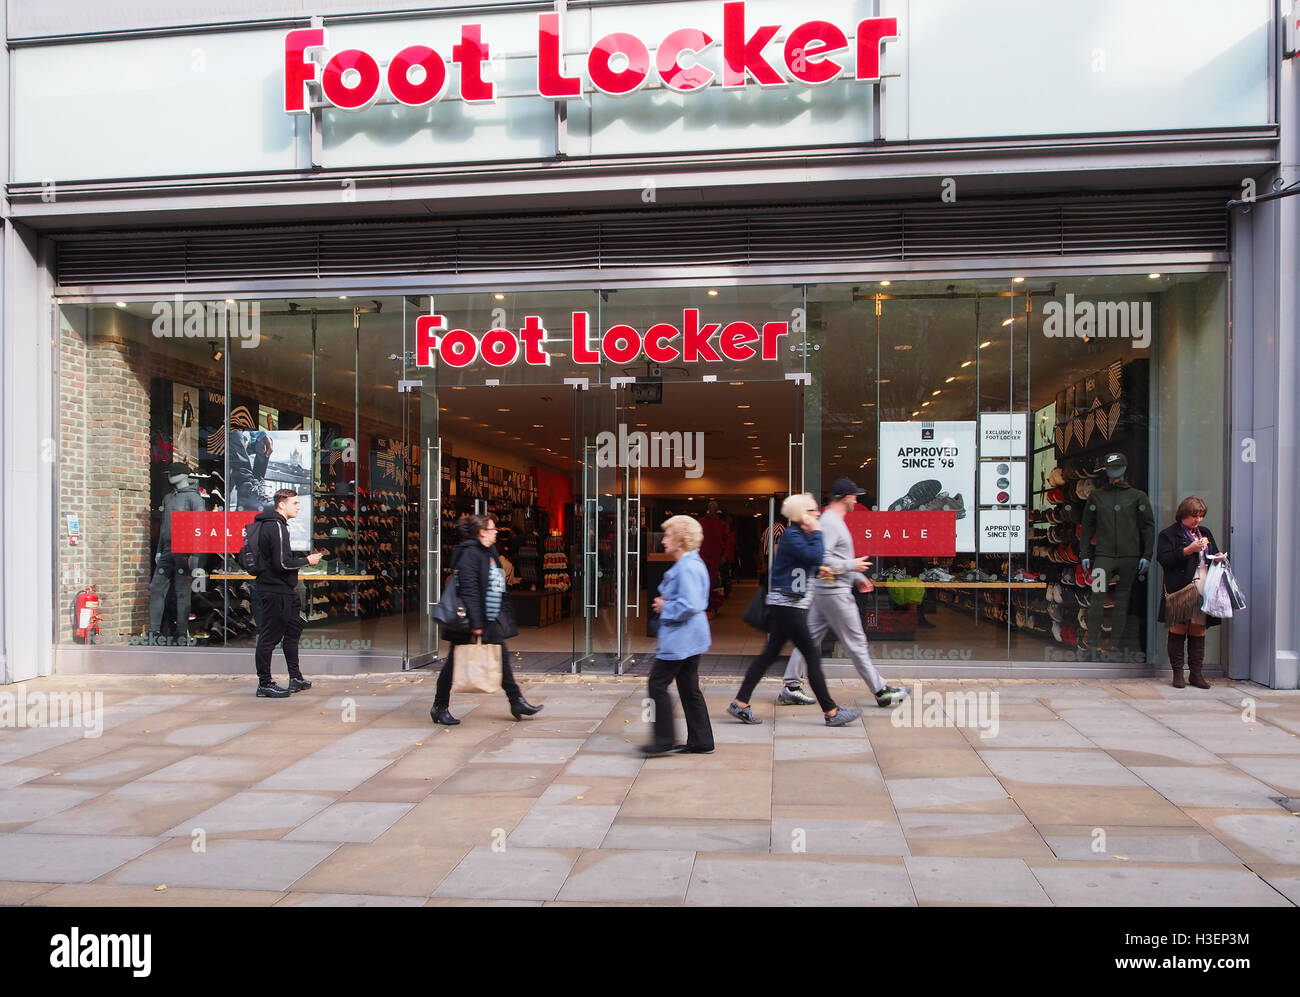 Magasin de chaussures Foot Locker dans le centre de Manchester, en  Angleterre, Royaume-Uni, avec six personnes à pied et passé un sale sign  dans la vitrine Photo Stock - Alamy